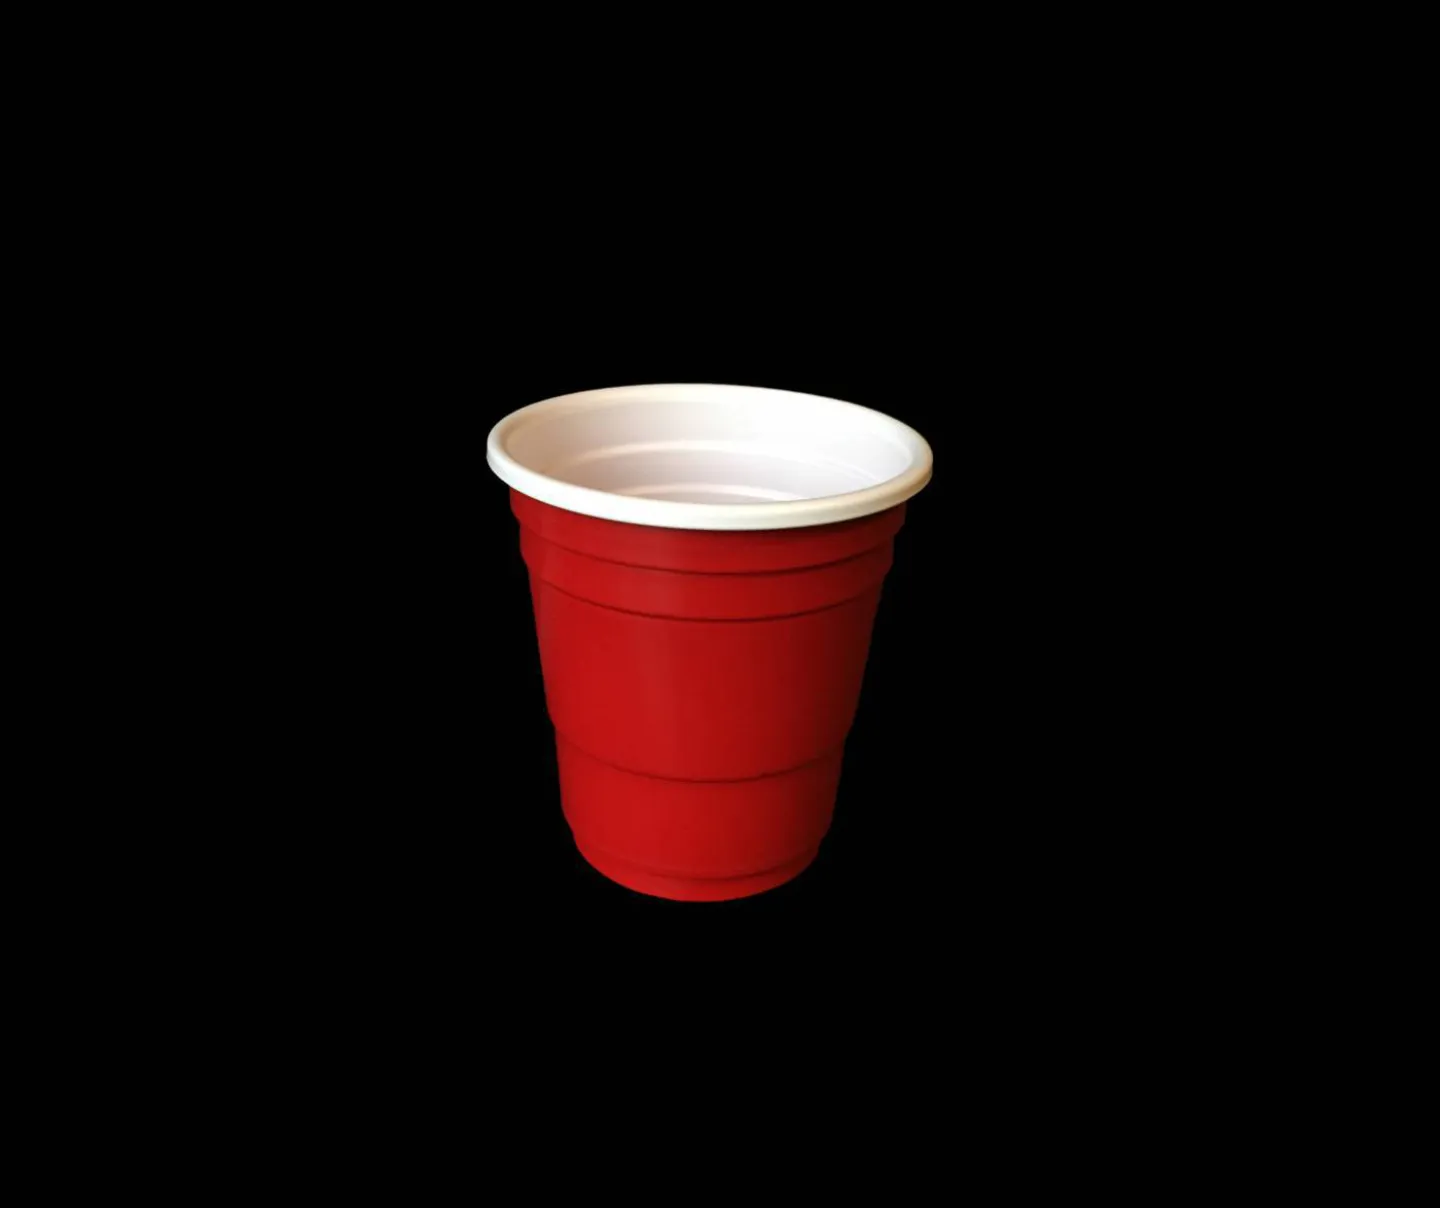 Goedkope red cups shotglaasjes.